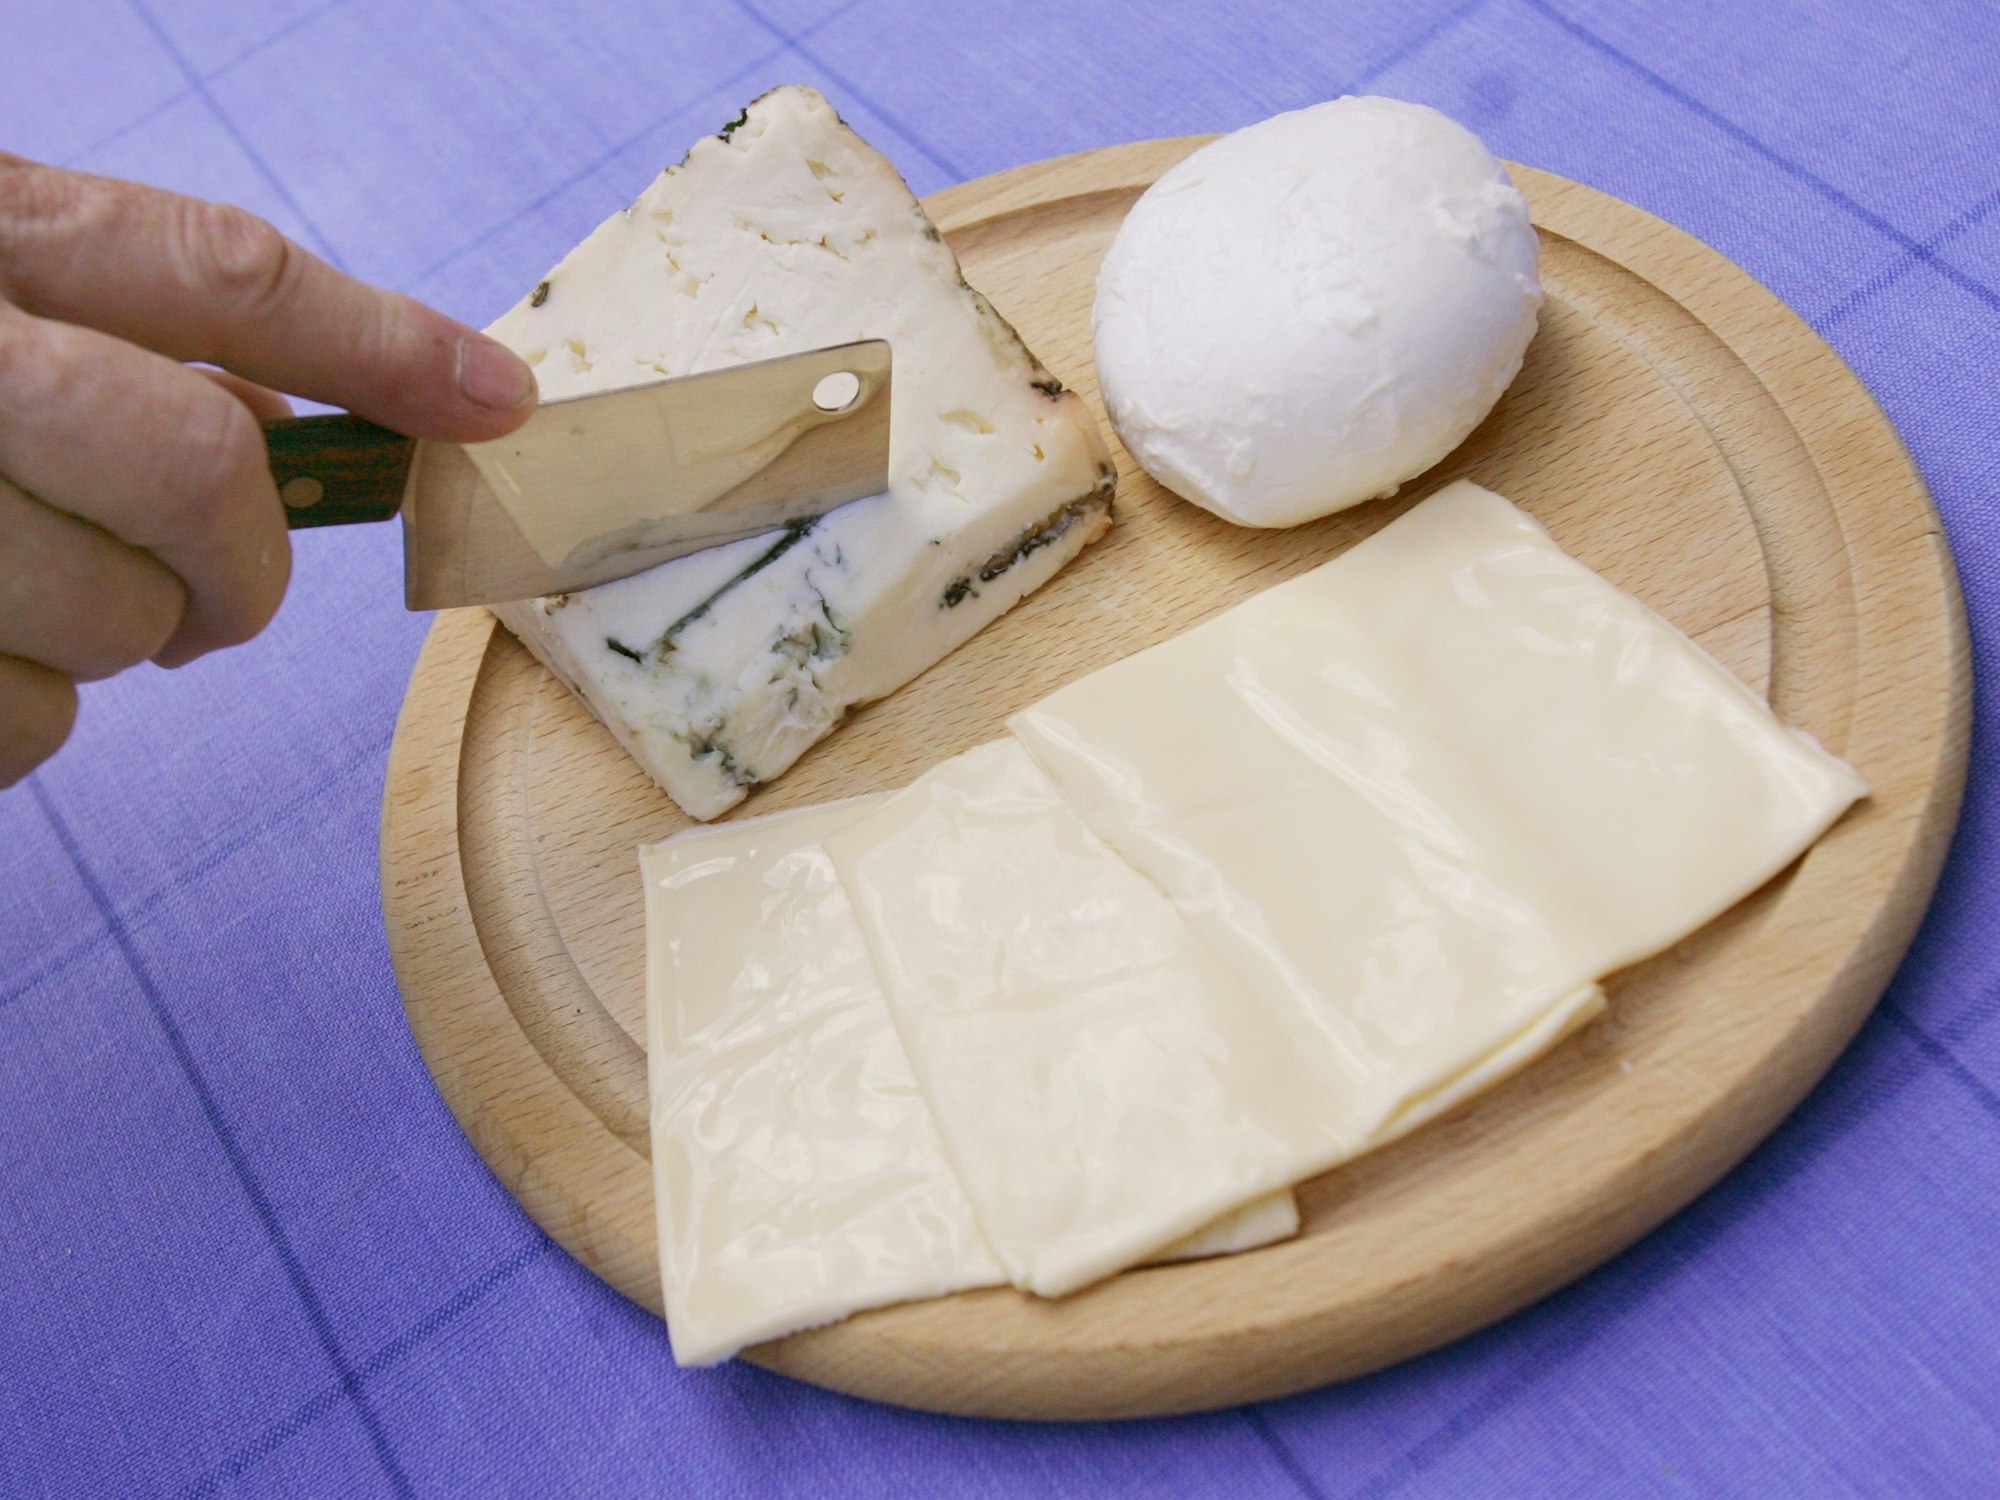 Unser Symbolbild zeigt Ein Stück Gorgonzola, ein Bällchen Mozzarella und drei Scheibletten Käse. Ein Mozzarella wird zurückgerufen, weil scharfkantige Kunststoffstückchen enthalten sein könnten.